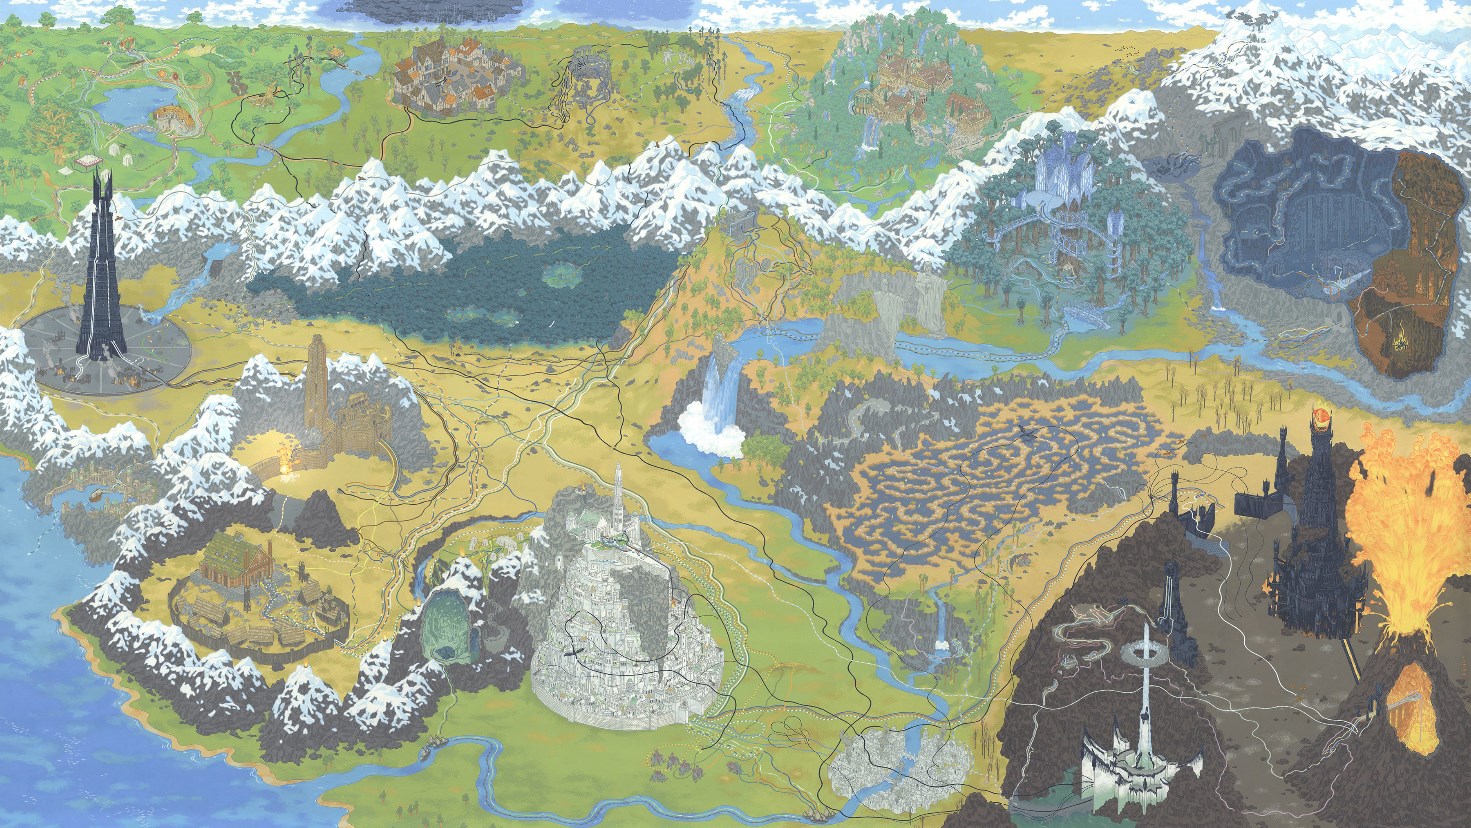 Wallpaper Engine 指环王霍比特人中土大陆地图 动态壁纸电脑版下载